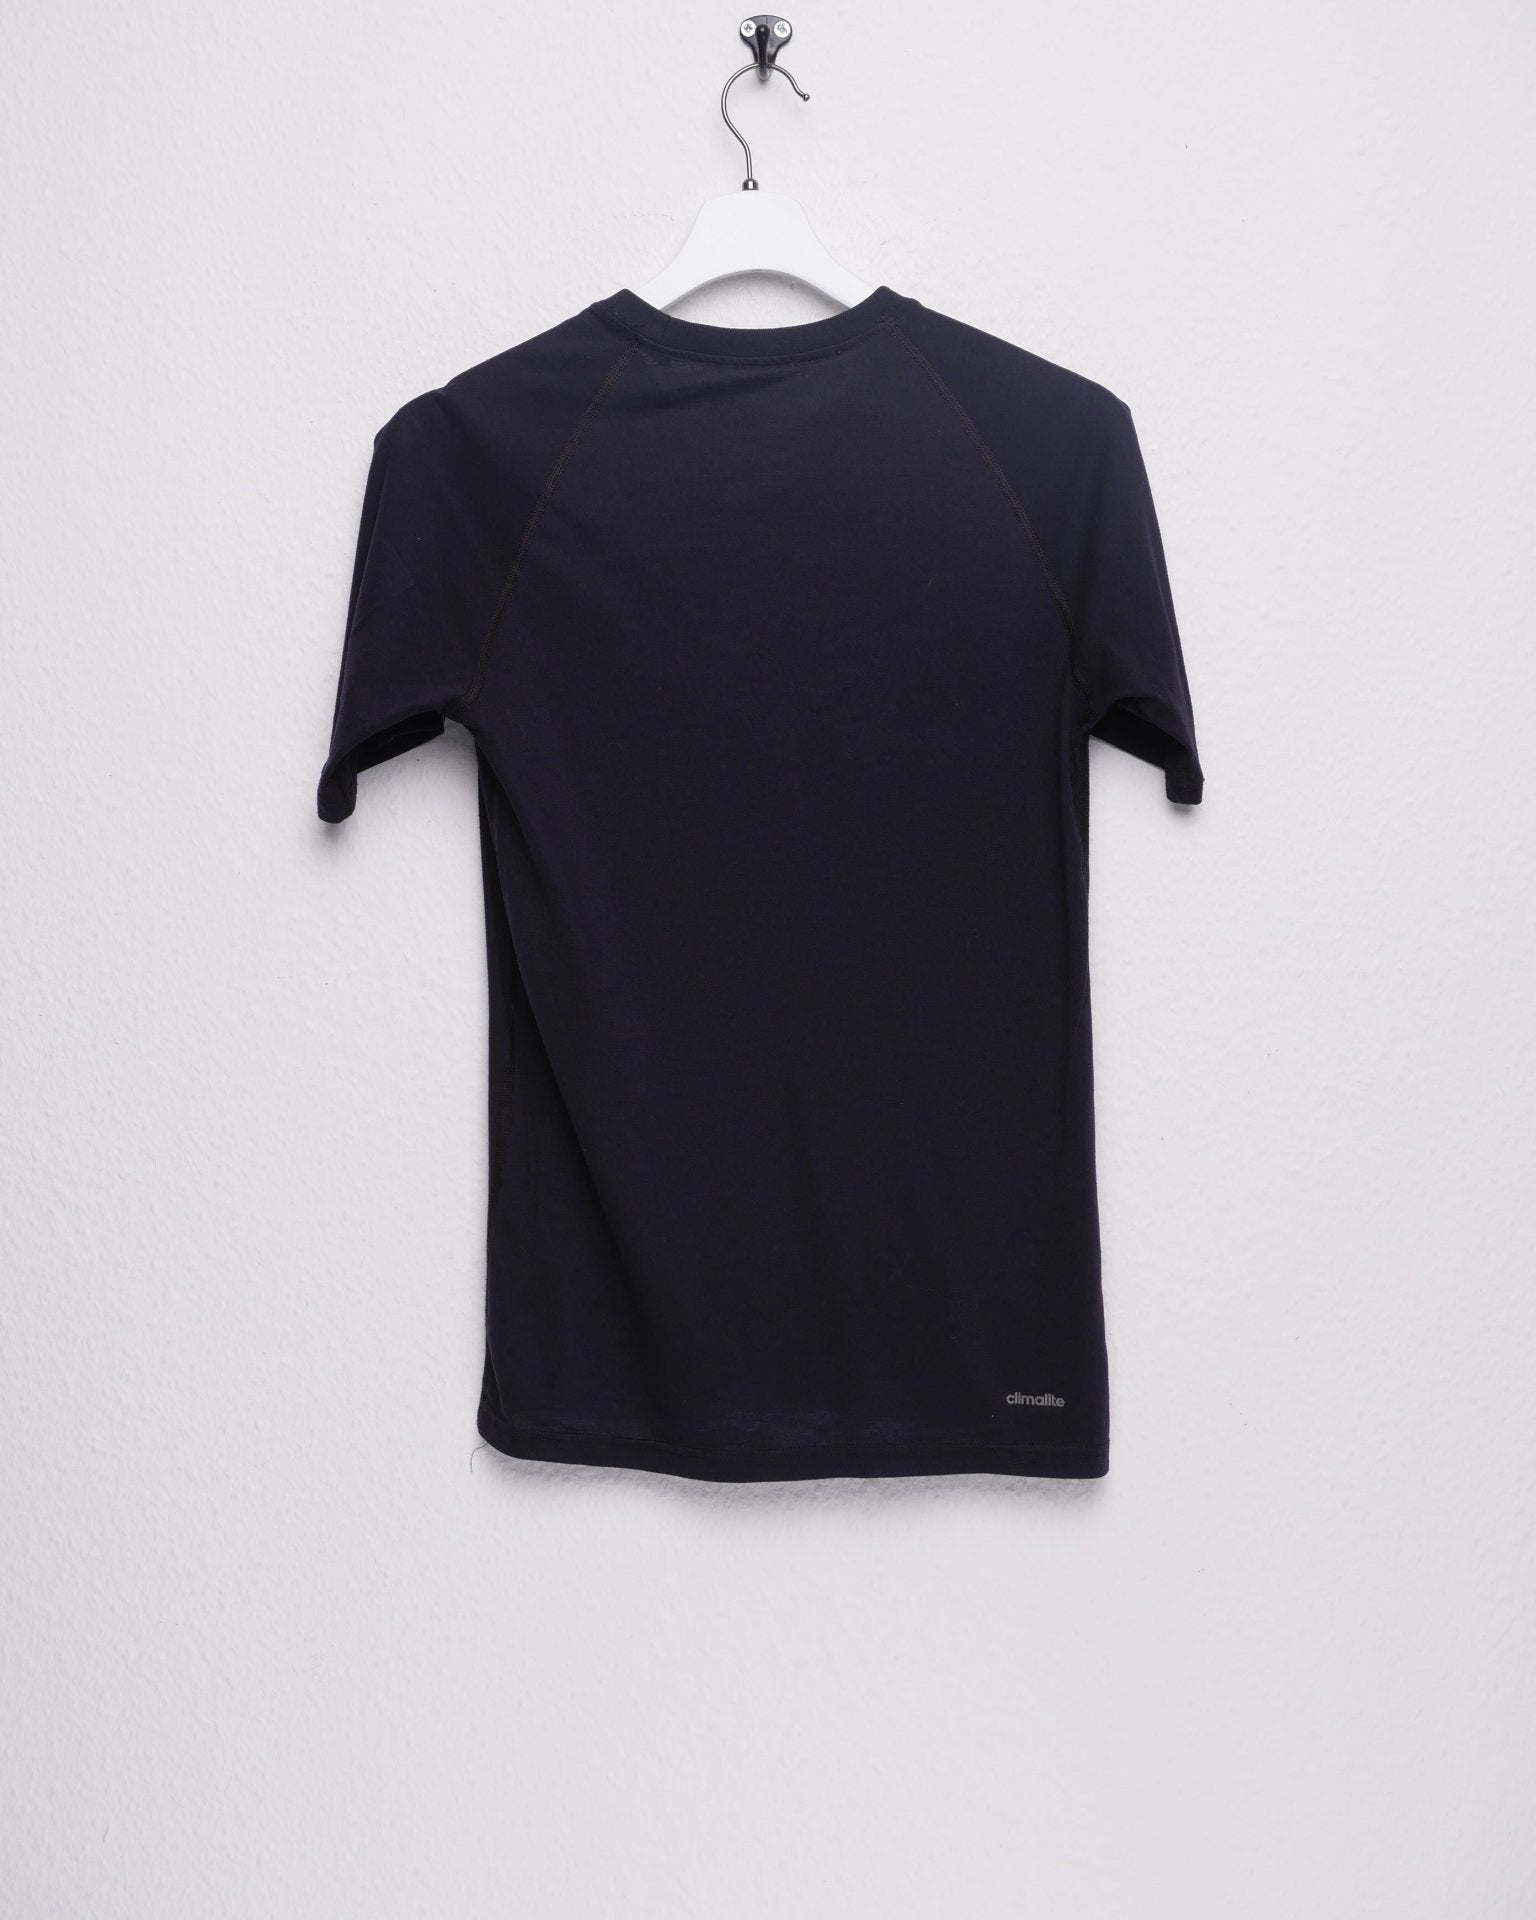 Adidas Premier Football Club printed Logo Shirt - Peeces